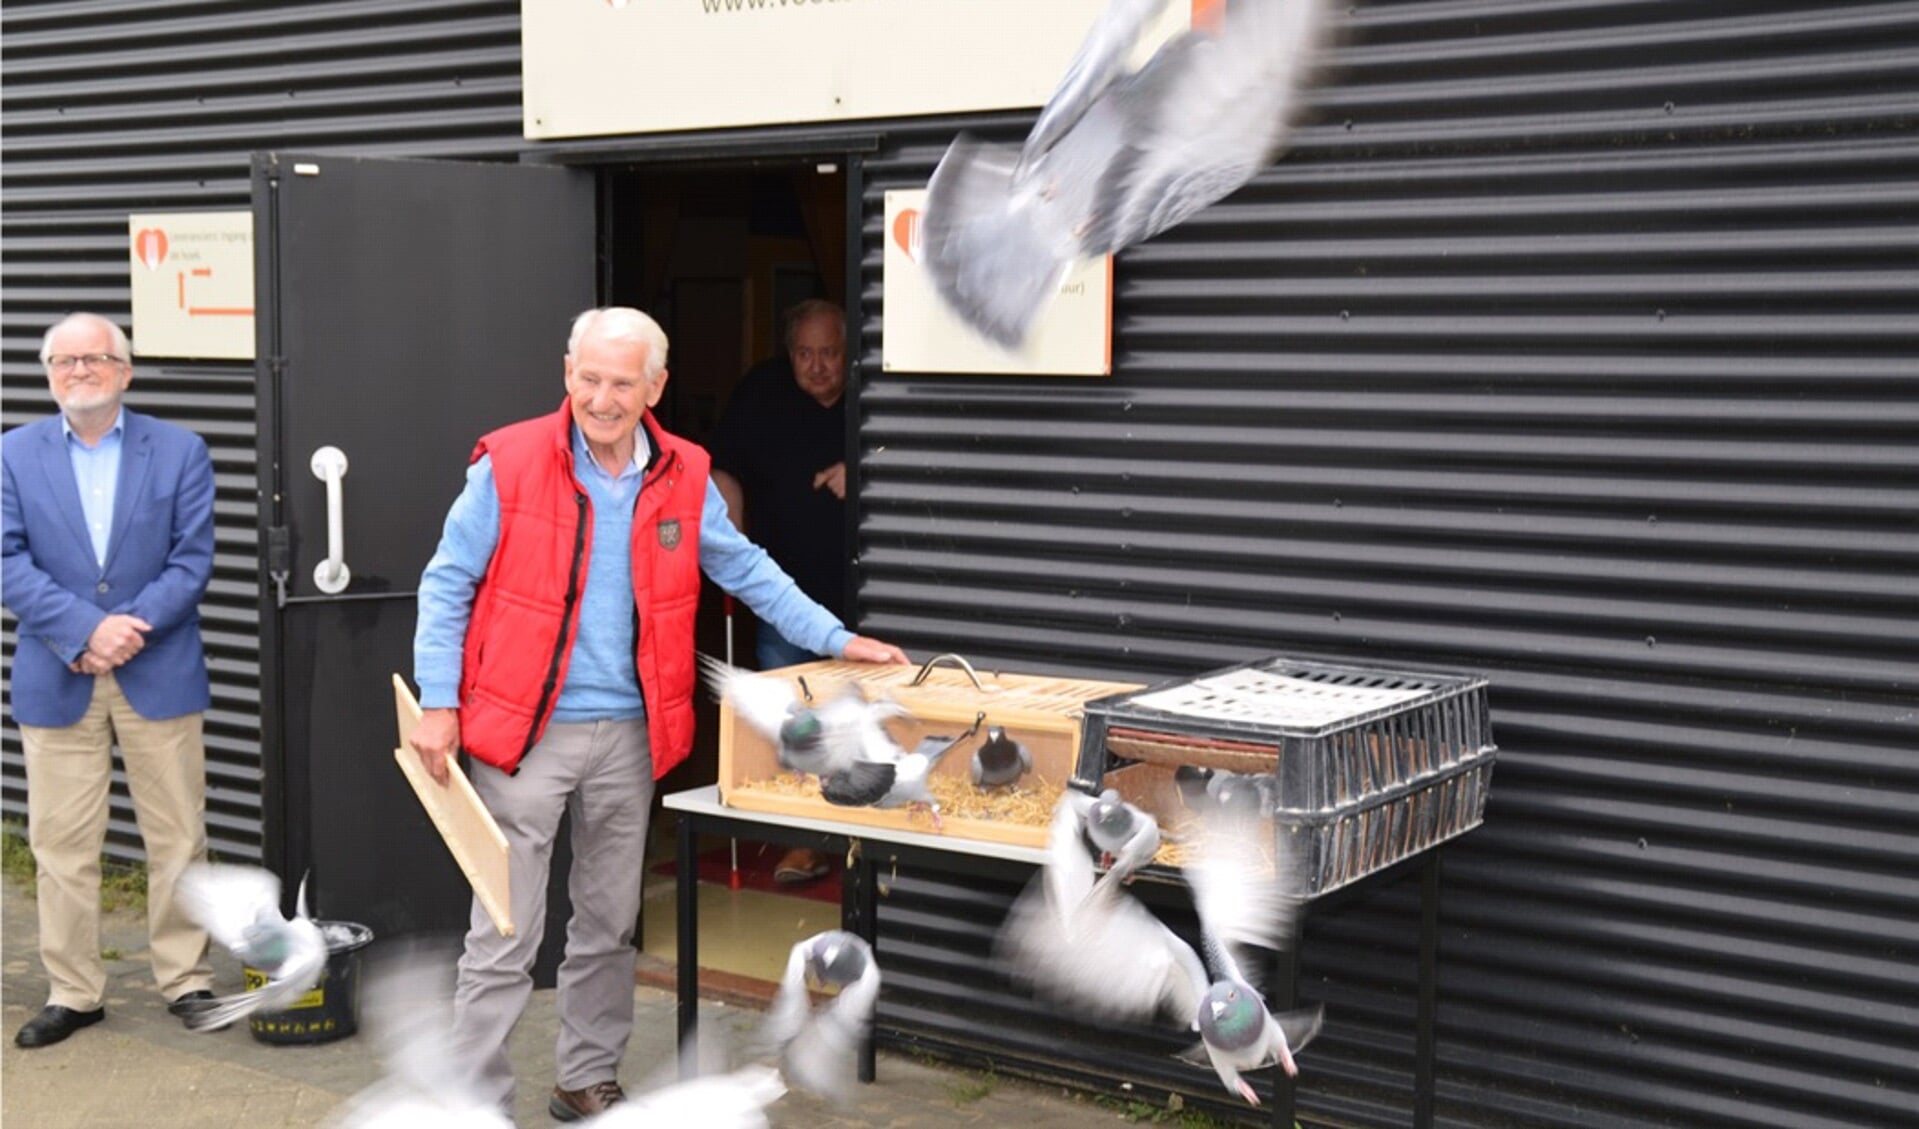 Gert Vrieze (l), voorzitter van de Voedselbank regio Zutphen, kijkt trots toe, terwijl duivenmelker Paul Troost uit Ellecom de duiven loslaat als symbool van hoop voor de toekomst. Foto: Henk Visscher